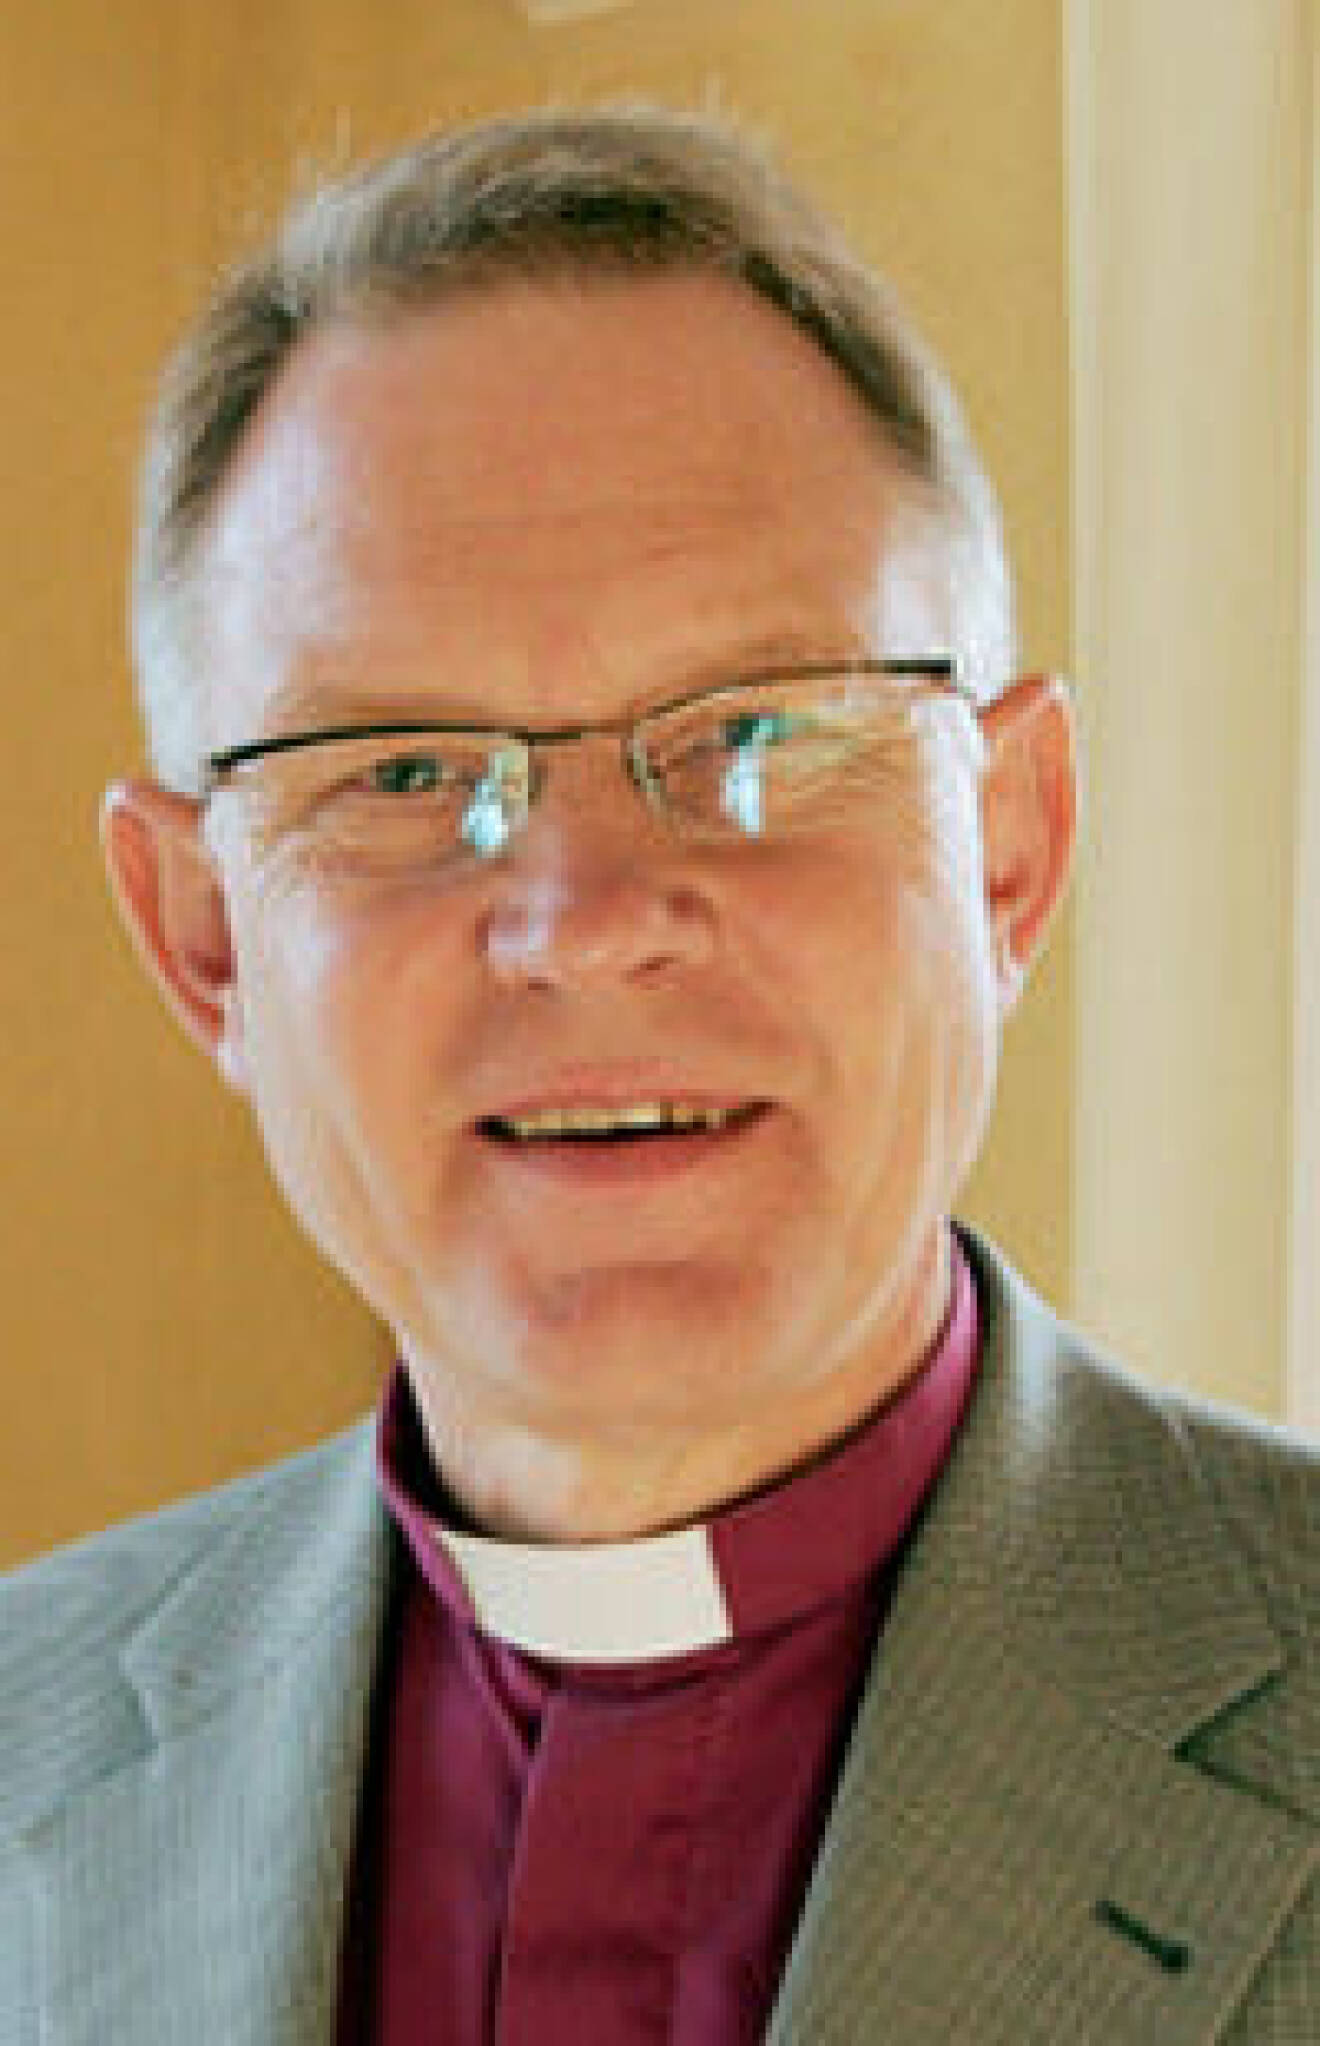 Ärkebiskop Anders Wejryd.